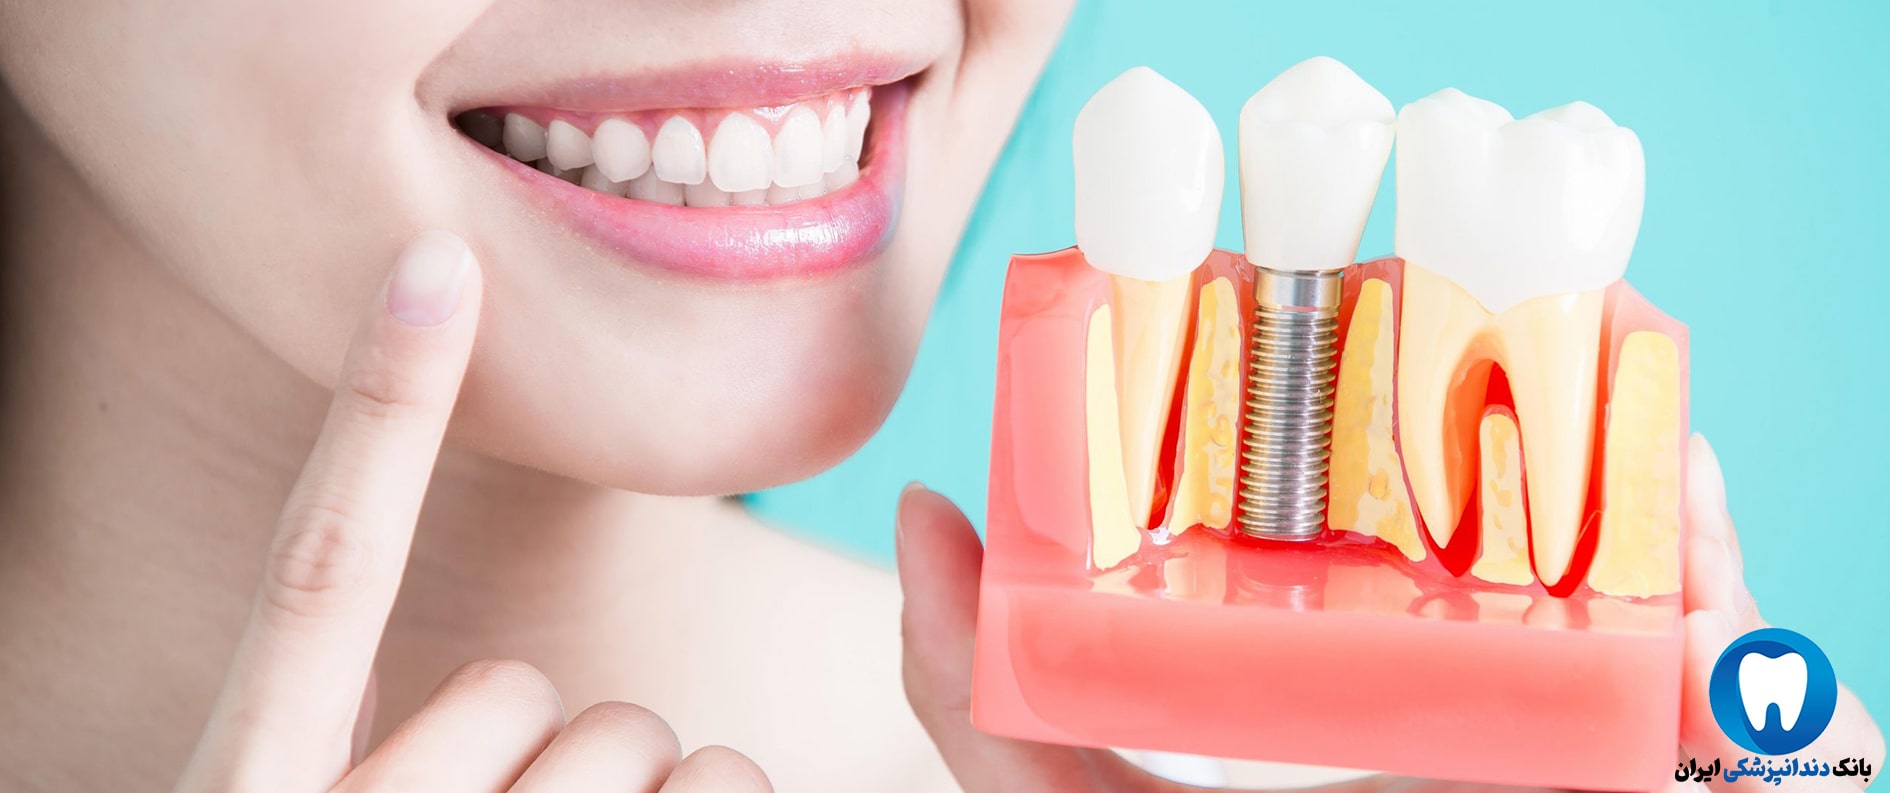 کاشت دندان در بهترین کلینیک دندانپزشکی زیبایی در قزوین